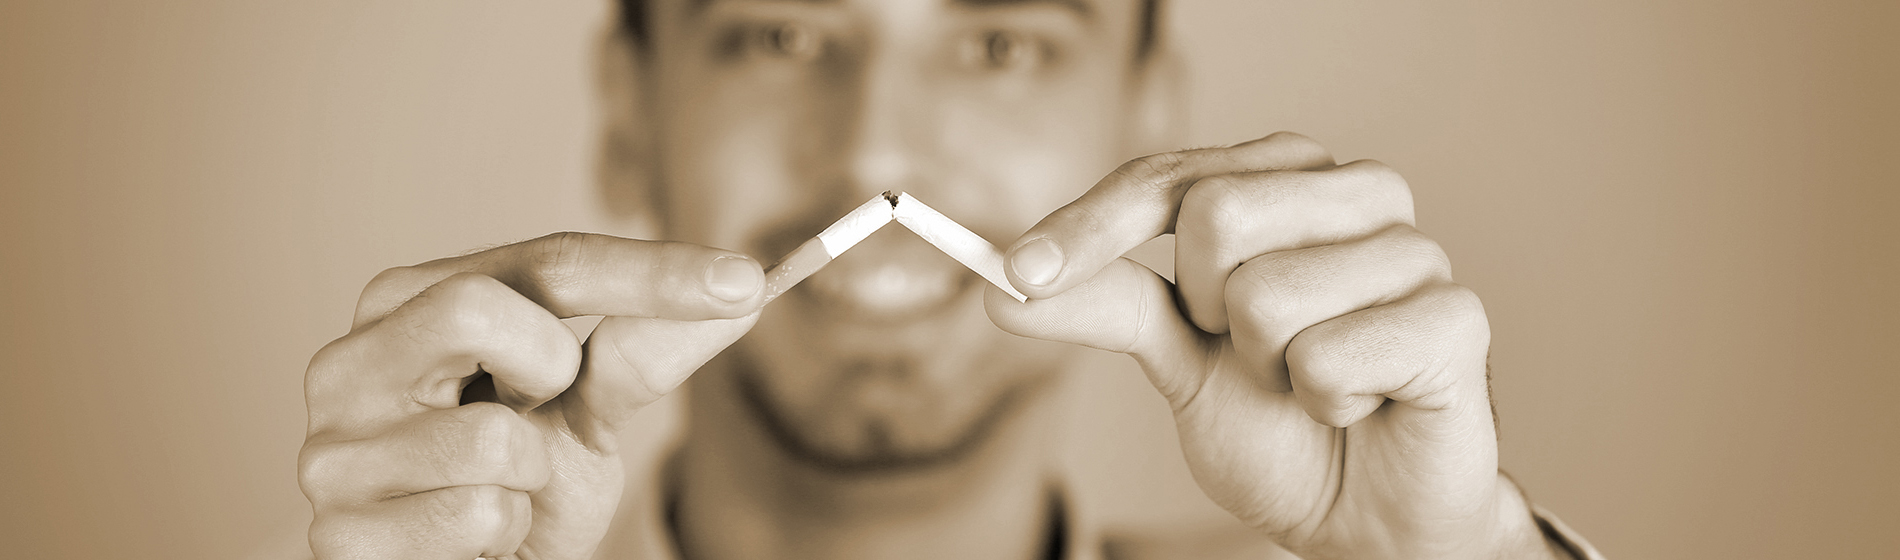 Aide au sevrage tabagique